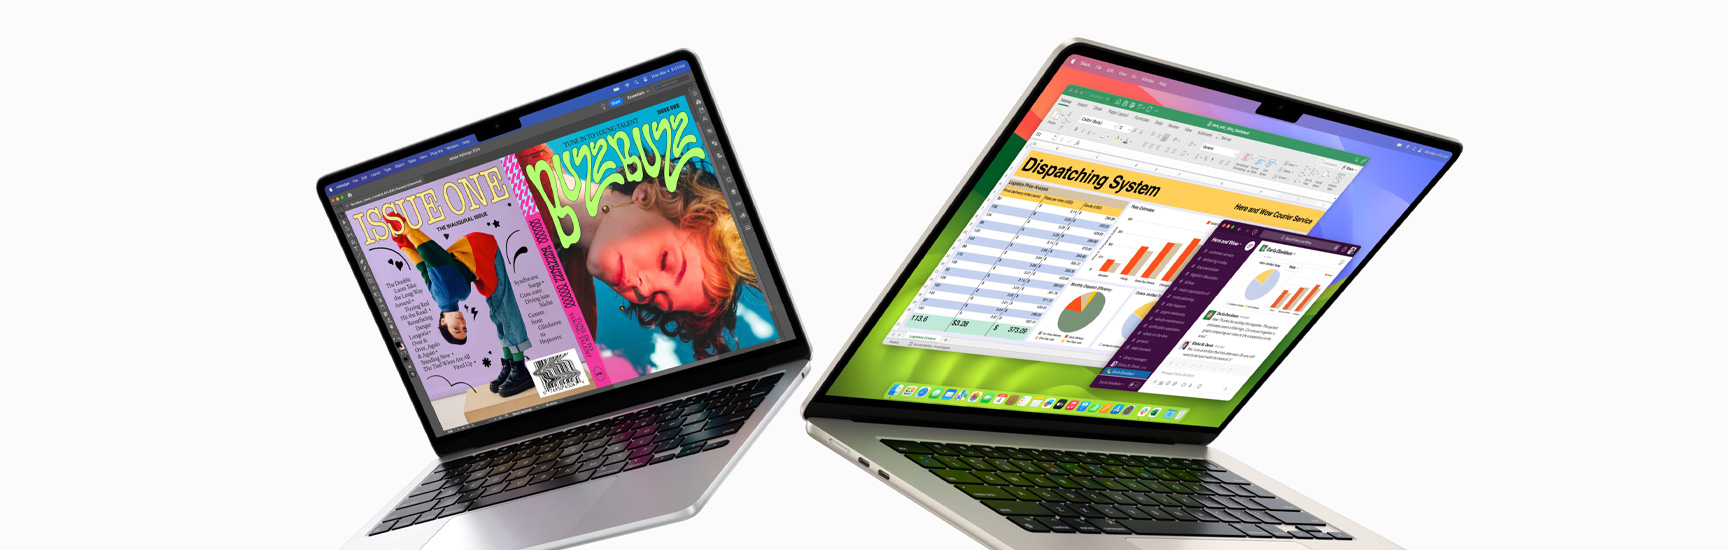 Čiastočne otvorený 13-palcový MacBook Air naľavo a 15-palcový MacBook Air napravo. Na 13-palcovej obrazovke je farebná obálka časopisu vytvorená v softvéri In Design. Na 15-palcovej obrazovke sú apky Microsoft Excel a Slack.